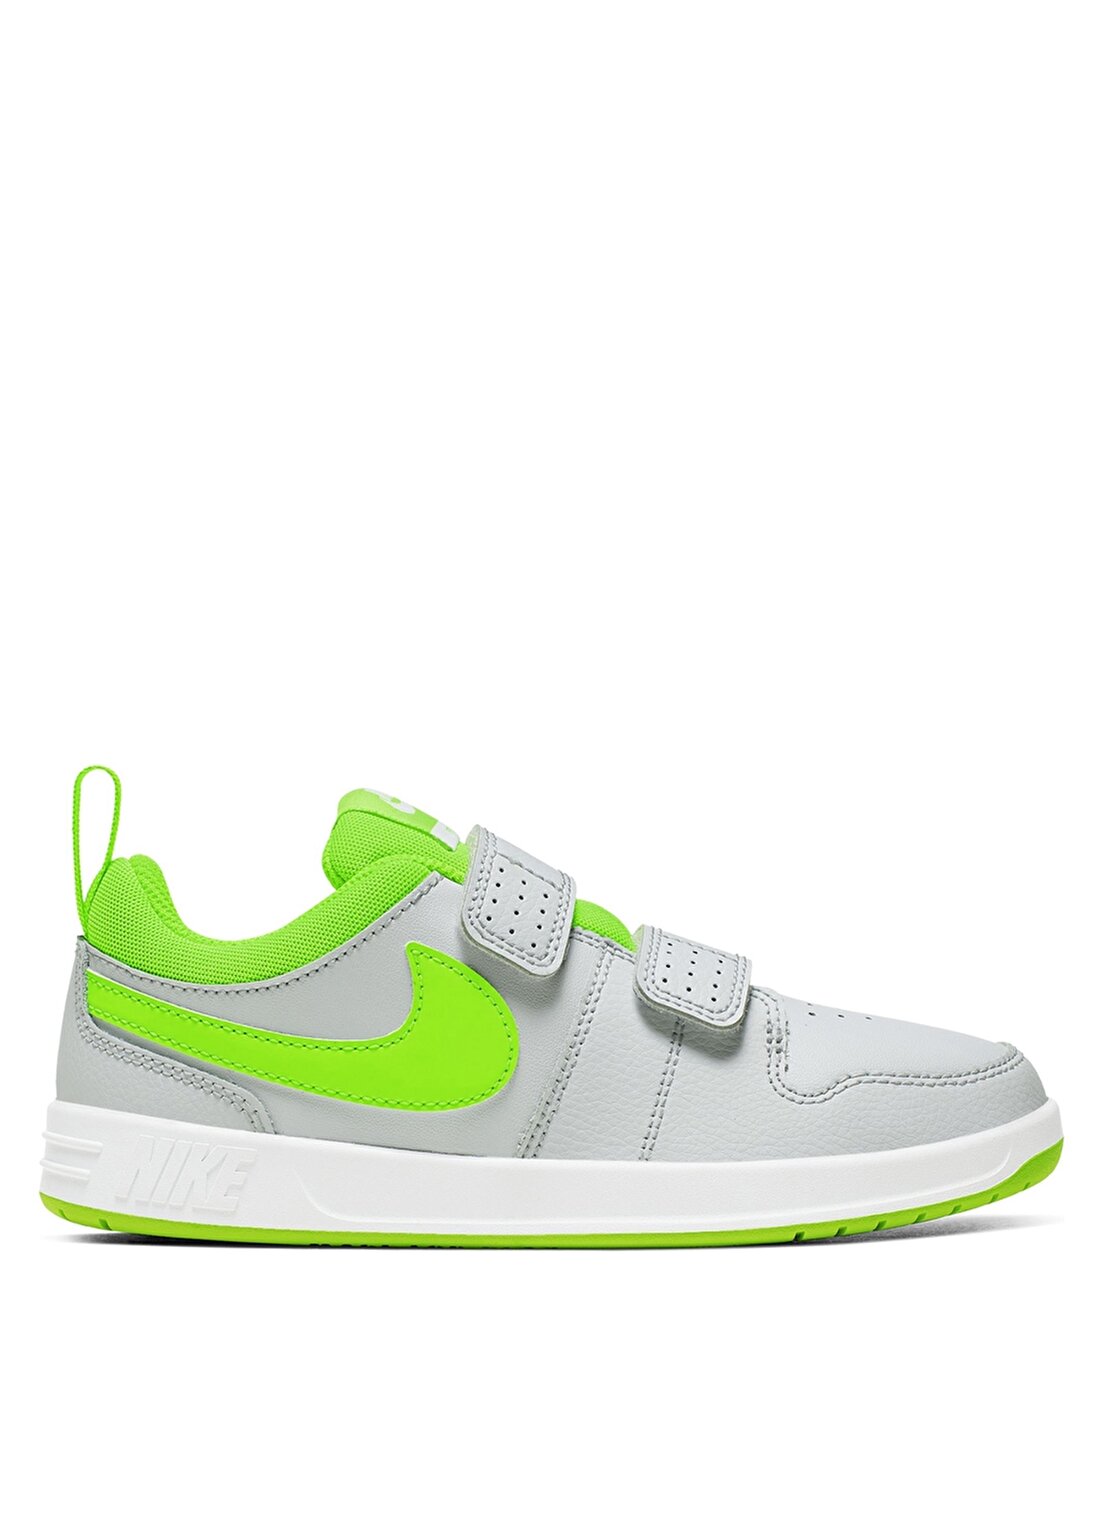 Nike Pico 5 Çocuk Yürüyüş Ayakkabısı